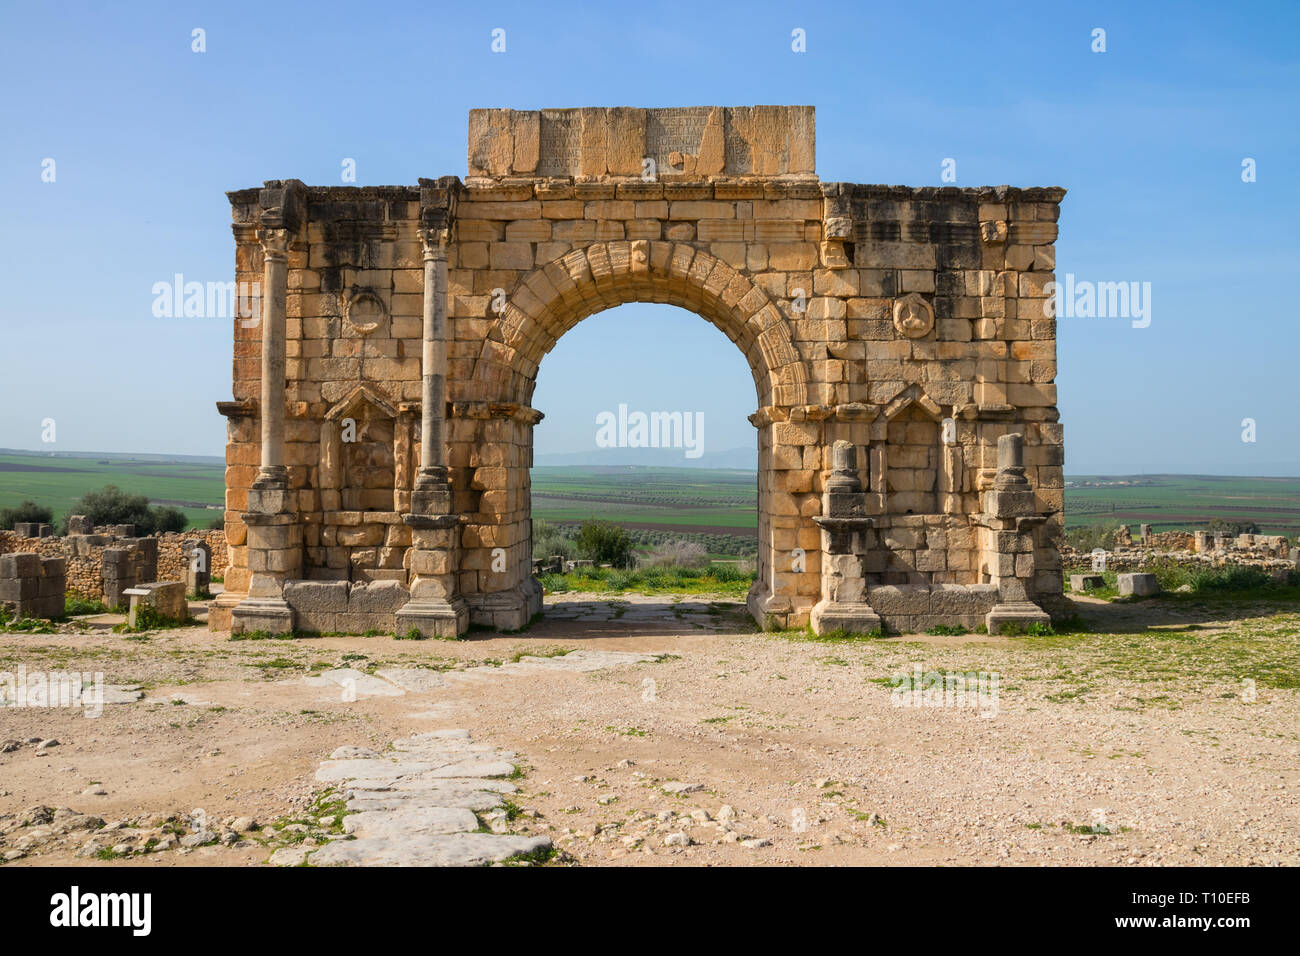 L'Arc de Caracalla (Arc de Triomphe) sur le site archéologique de Volubilis sous un ciel bleu, Fes-Meknes, Maroc. Banque D'Images